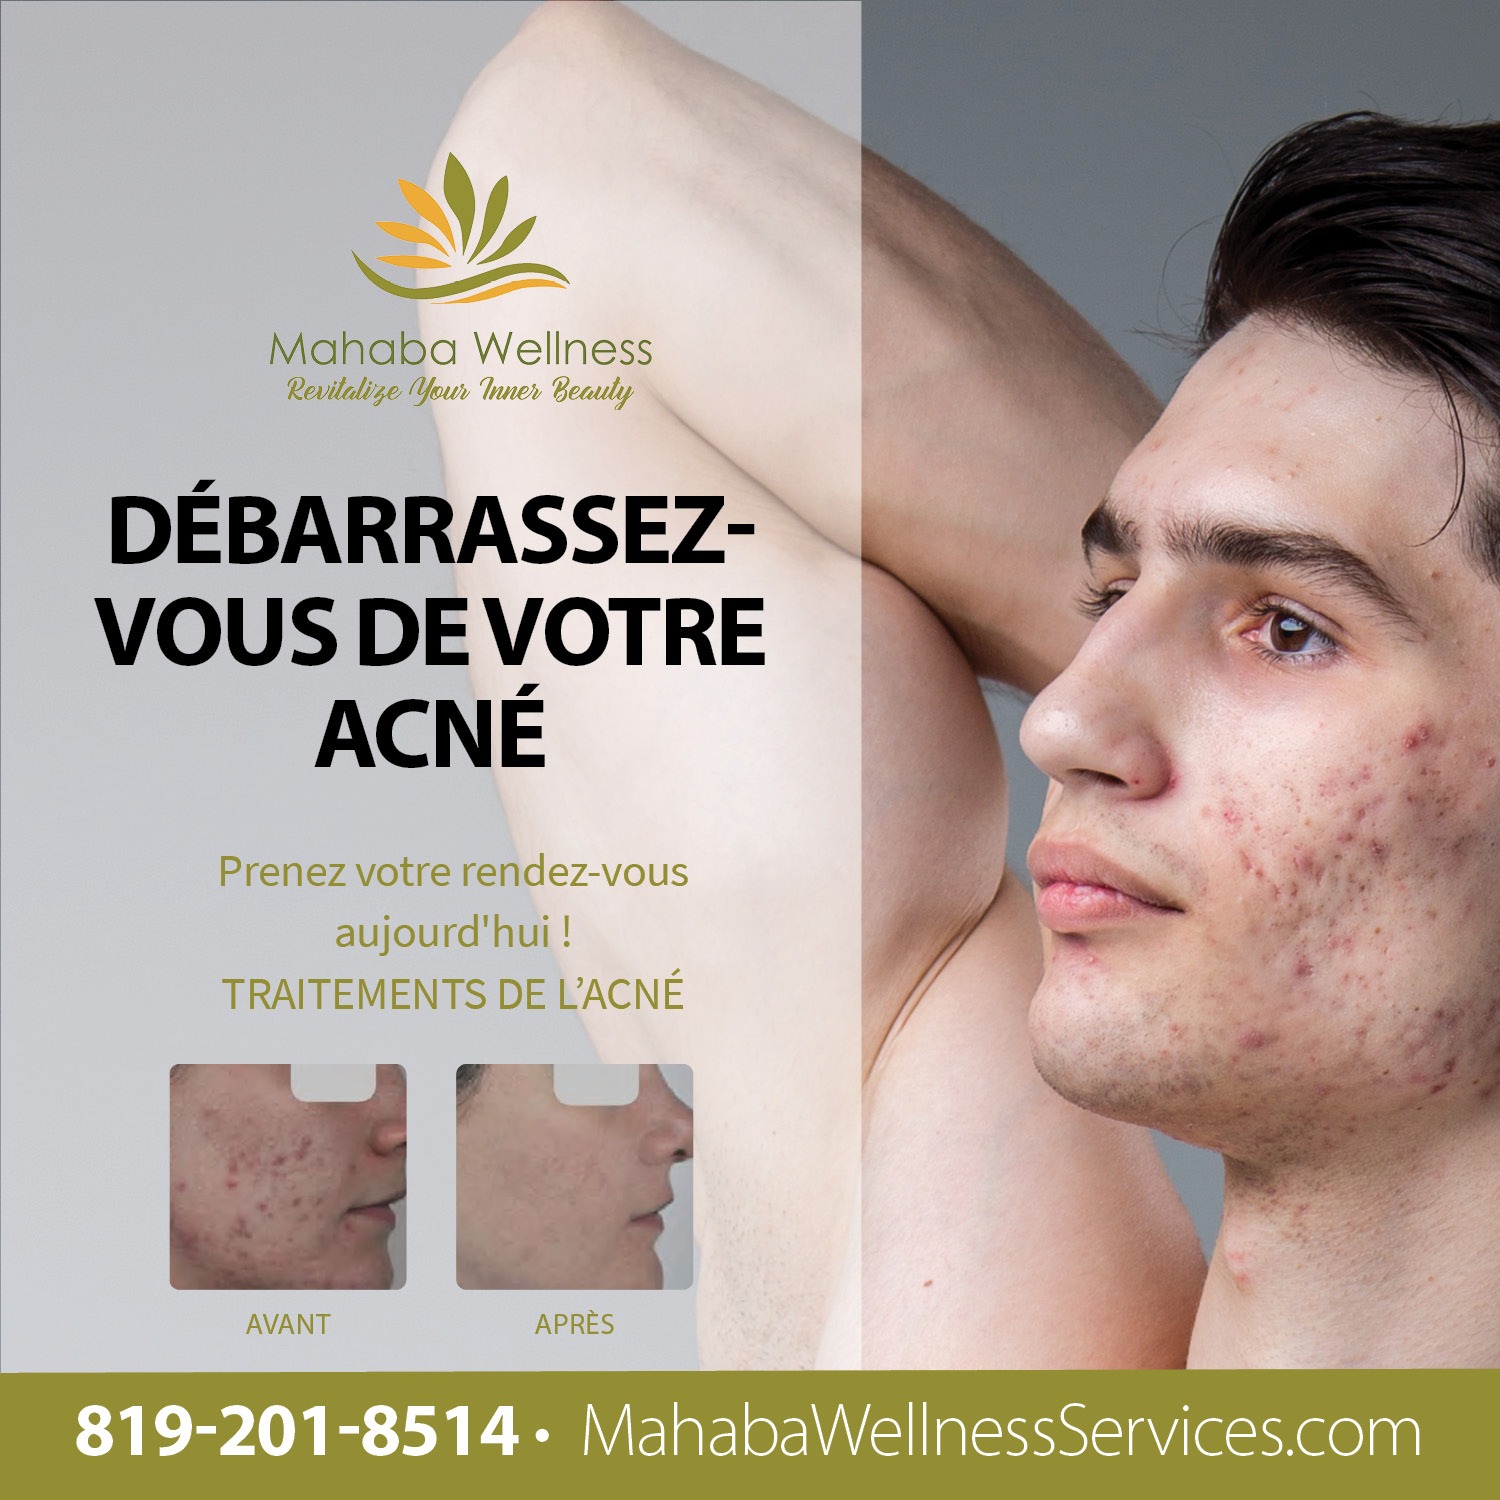 Mahaba Wellness Services - Traitement de l'acné pour les hommes - Gatineau Québec